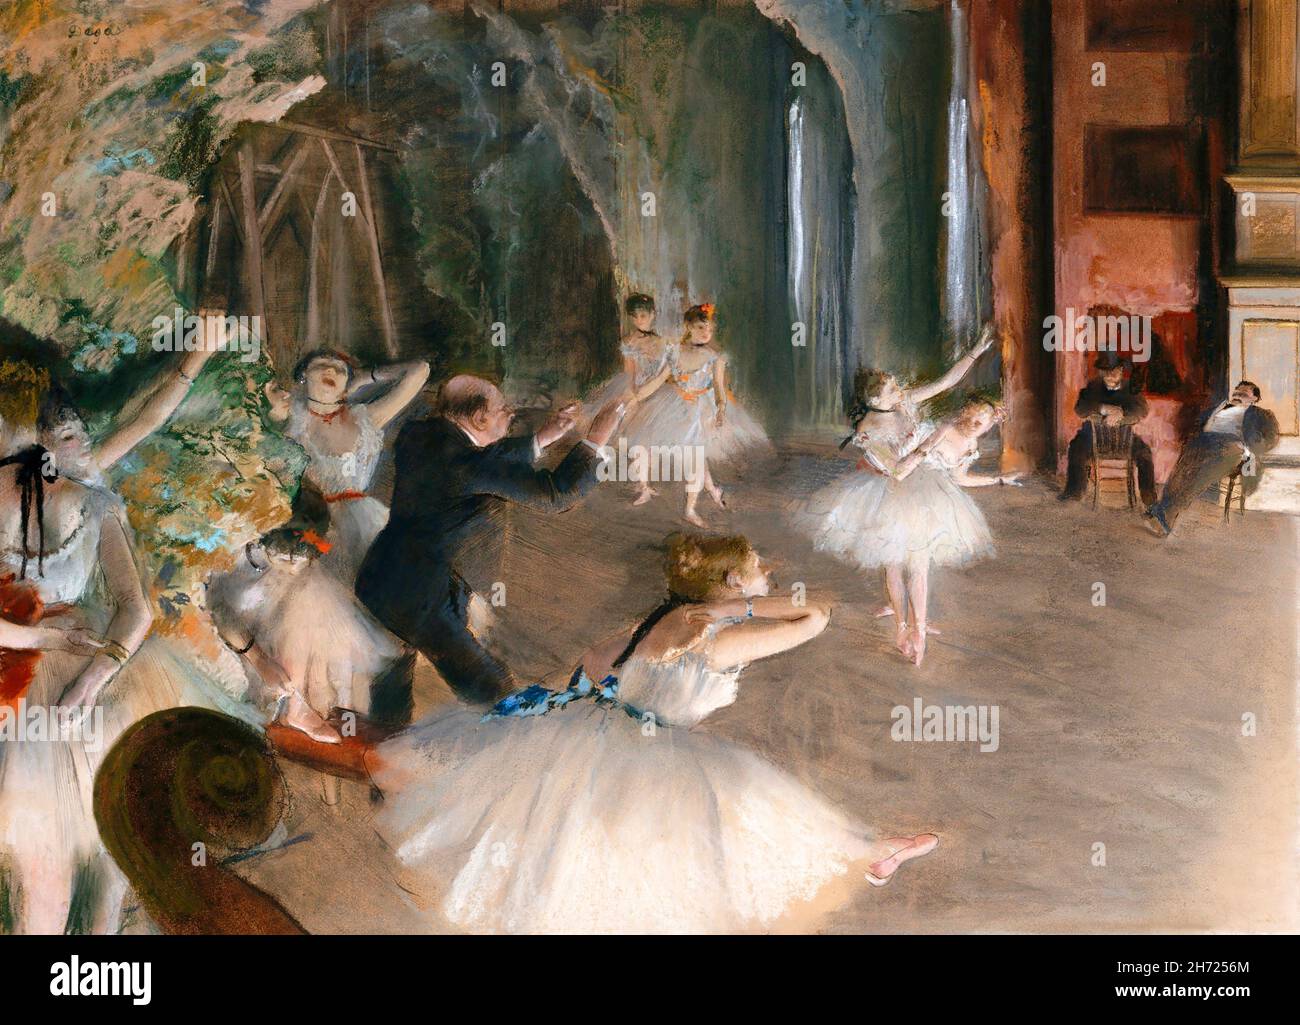 Degas. Gemälde mit dem Titel 'die Probe auf der Bühne' von Edgar Degas (1834-1917), Pastell über Pinsel-und-Tusche-Zeichnung auf dünnem cremefarbenen Wove-Papier, c. 1874 Stockfoto